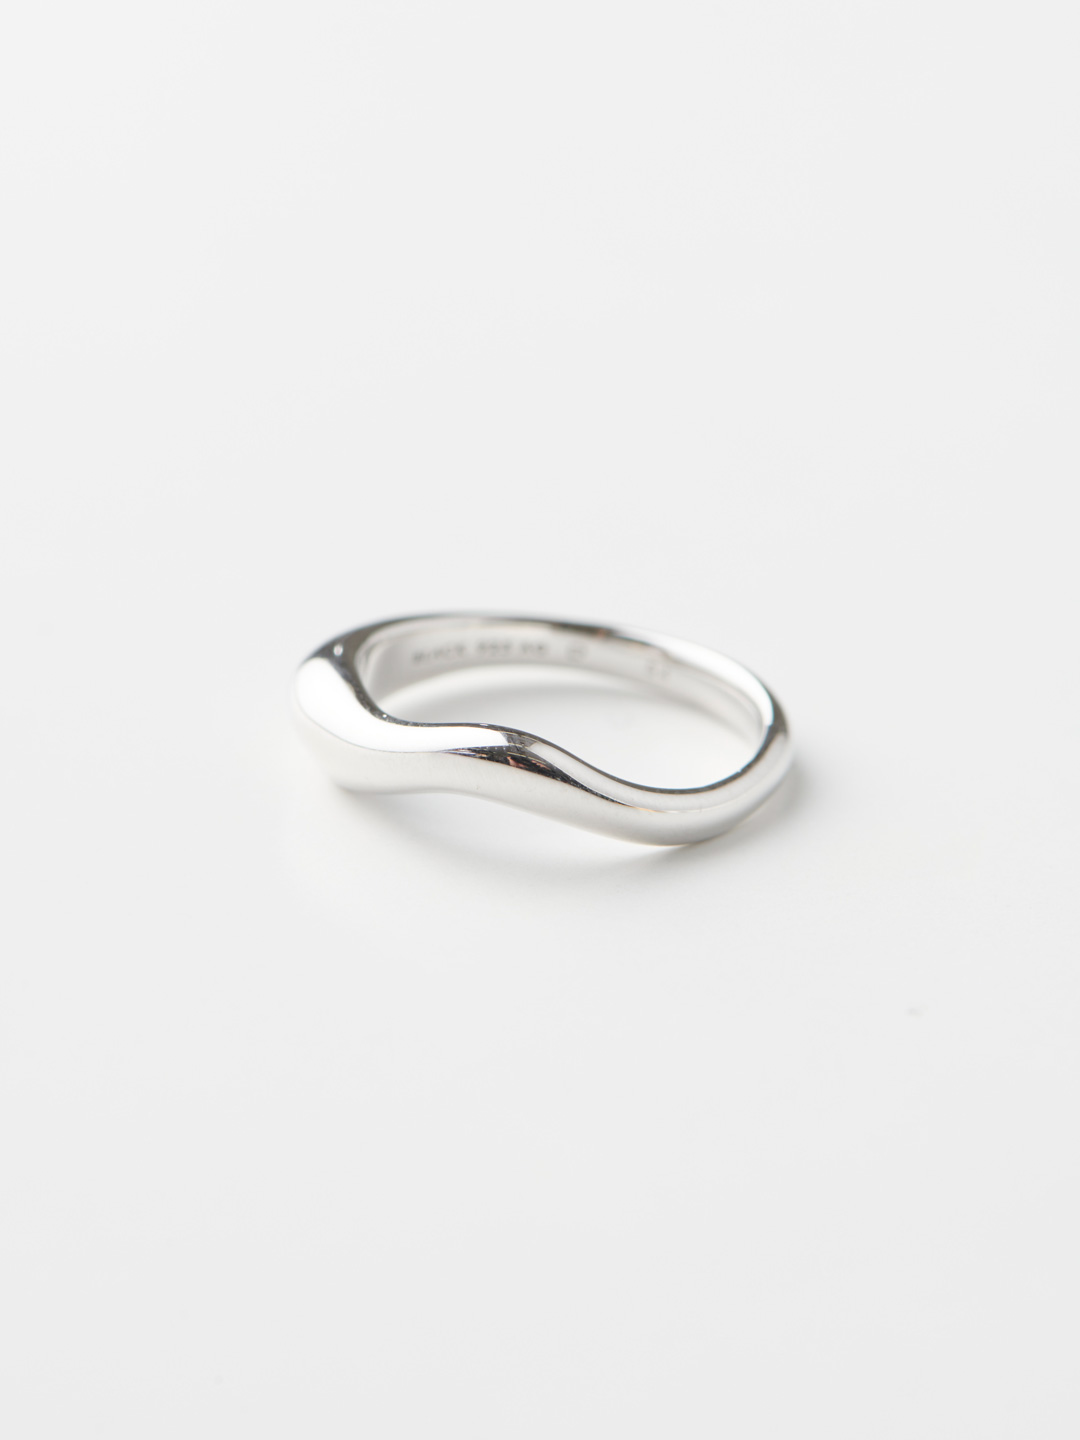 Vayu Ring  - Silver